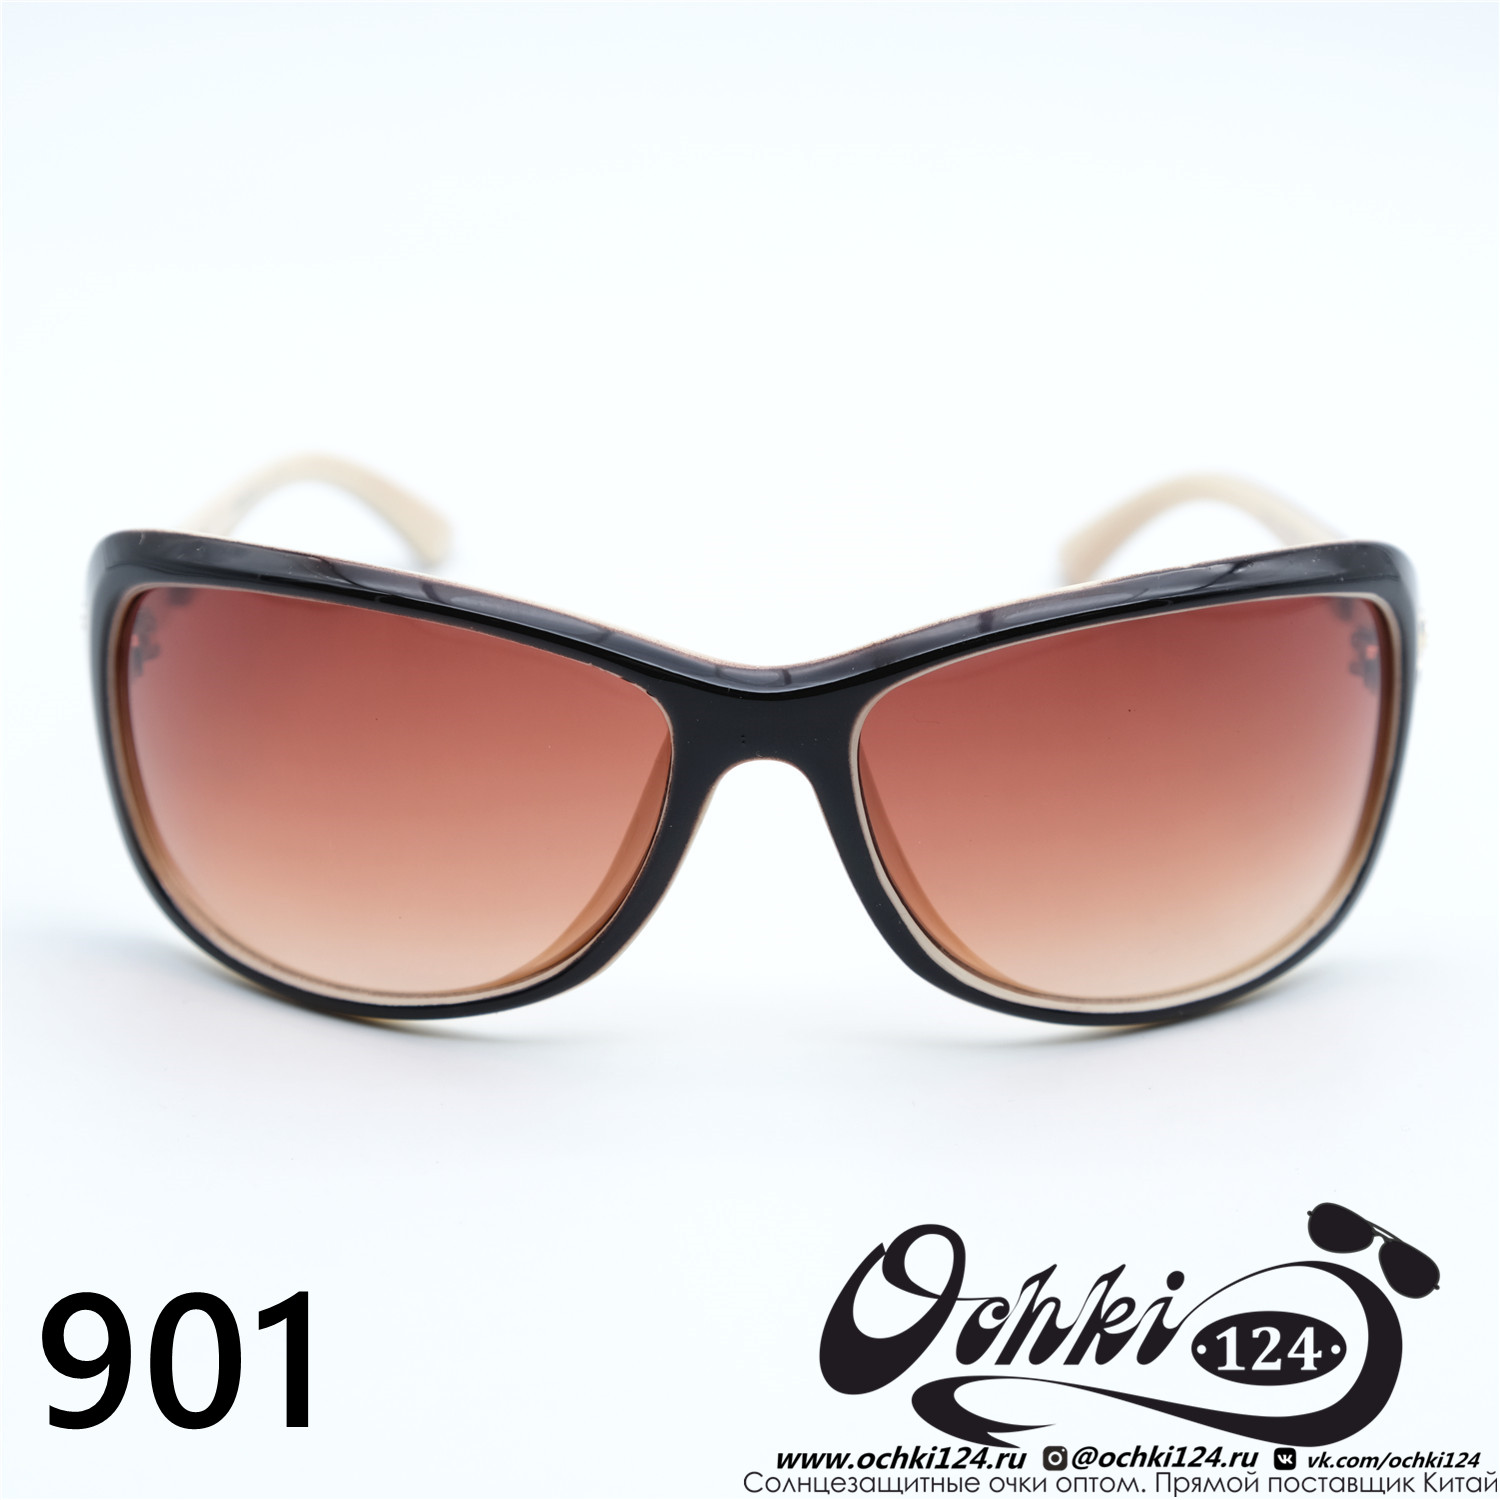  Солнцезащитные очки картинка Женские Prius  Стандартные 901-C3 